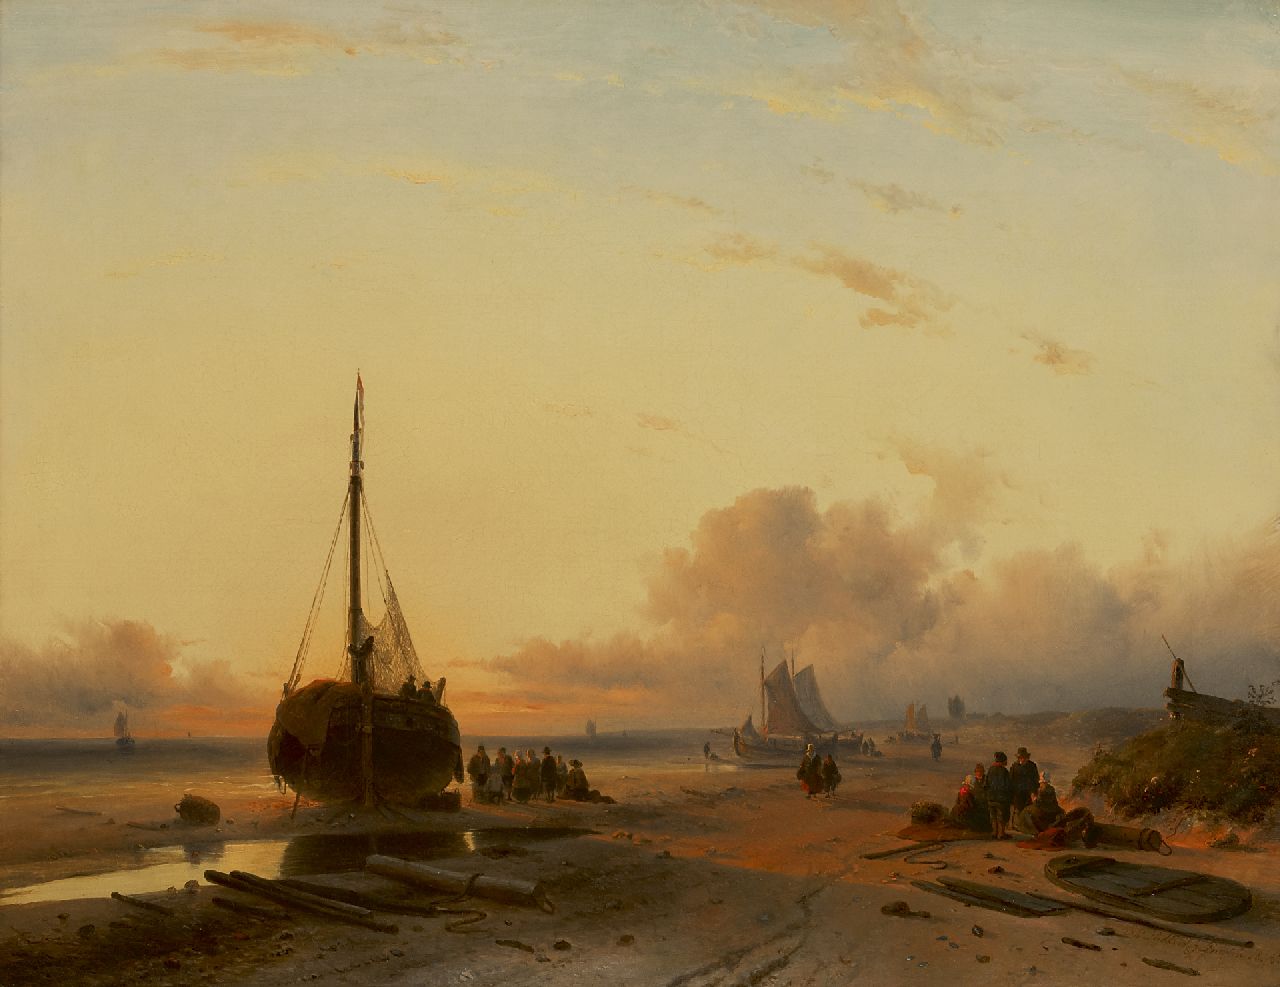 Leickert C.H.J.  | 'Charles' Henri Joseph Leickert | Schilderijen te koop aangeboden | Bomschuiten op het strand bij ondergaande zon, olieverf op doek 58,0 x 75,0 cm, gesigneerd rechtsonder en gedateerd 'London' 1845